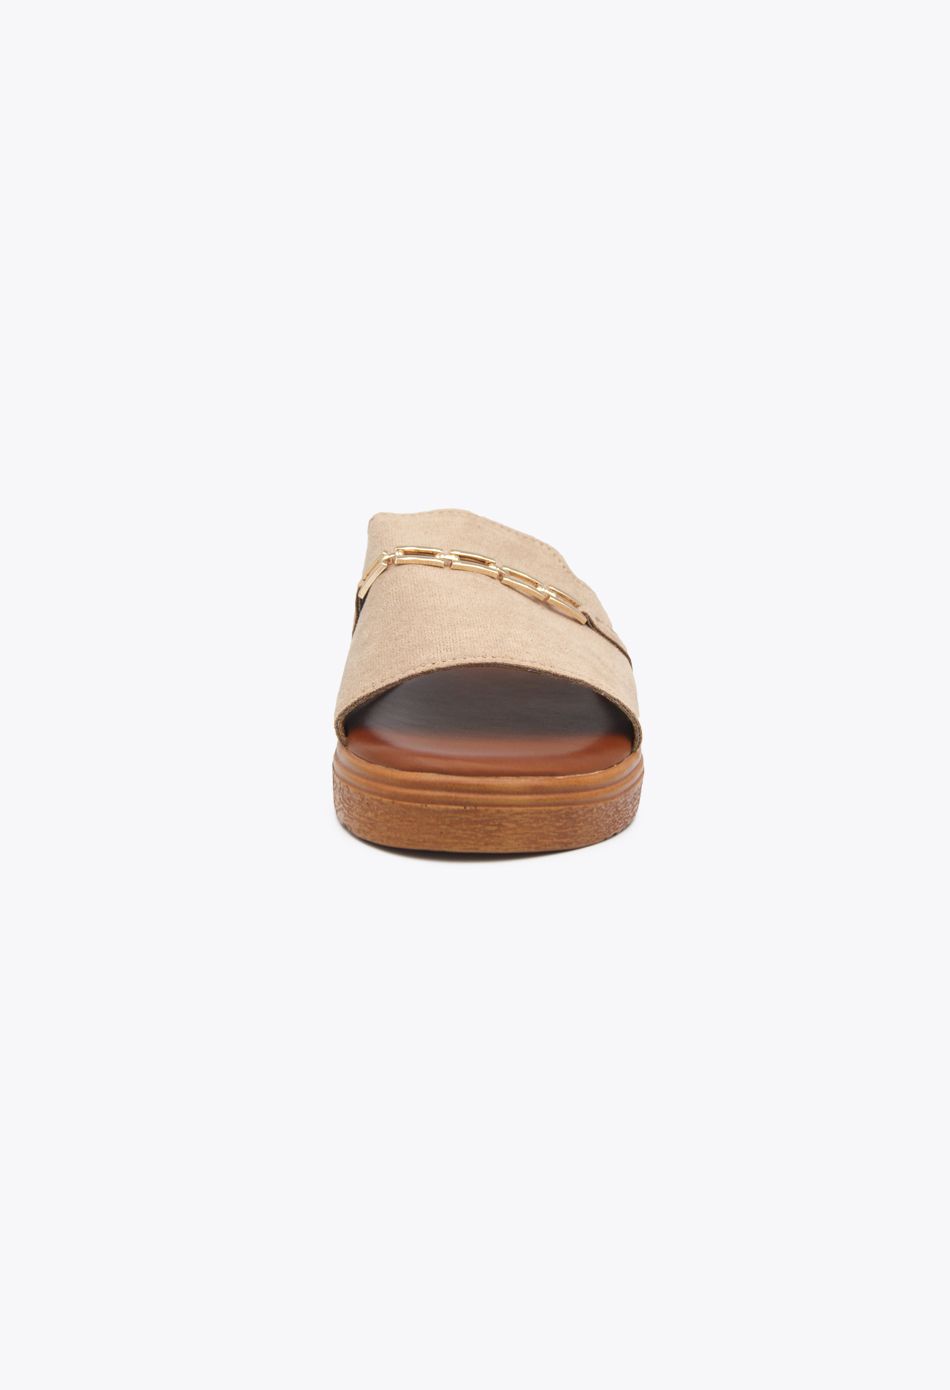 Σουέτ Flat Σανδάλια με Διακοσμητική Αλυσίδα Μπεζ / 190-beige Ανοιχτά Παπούτσια joya.gr